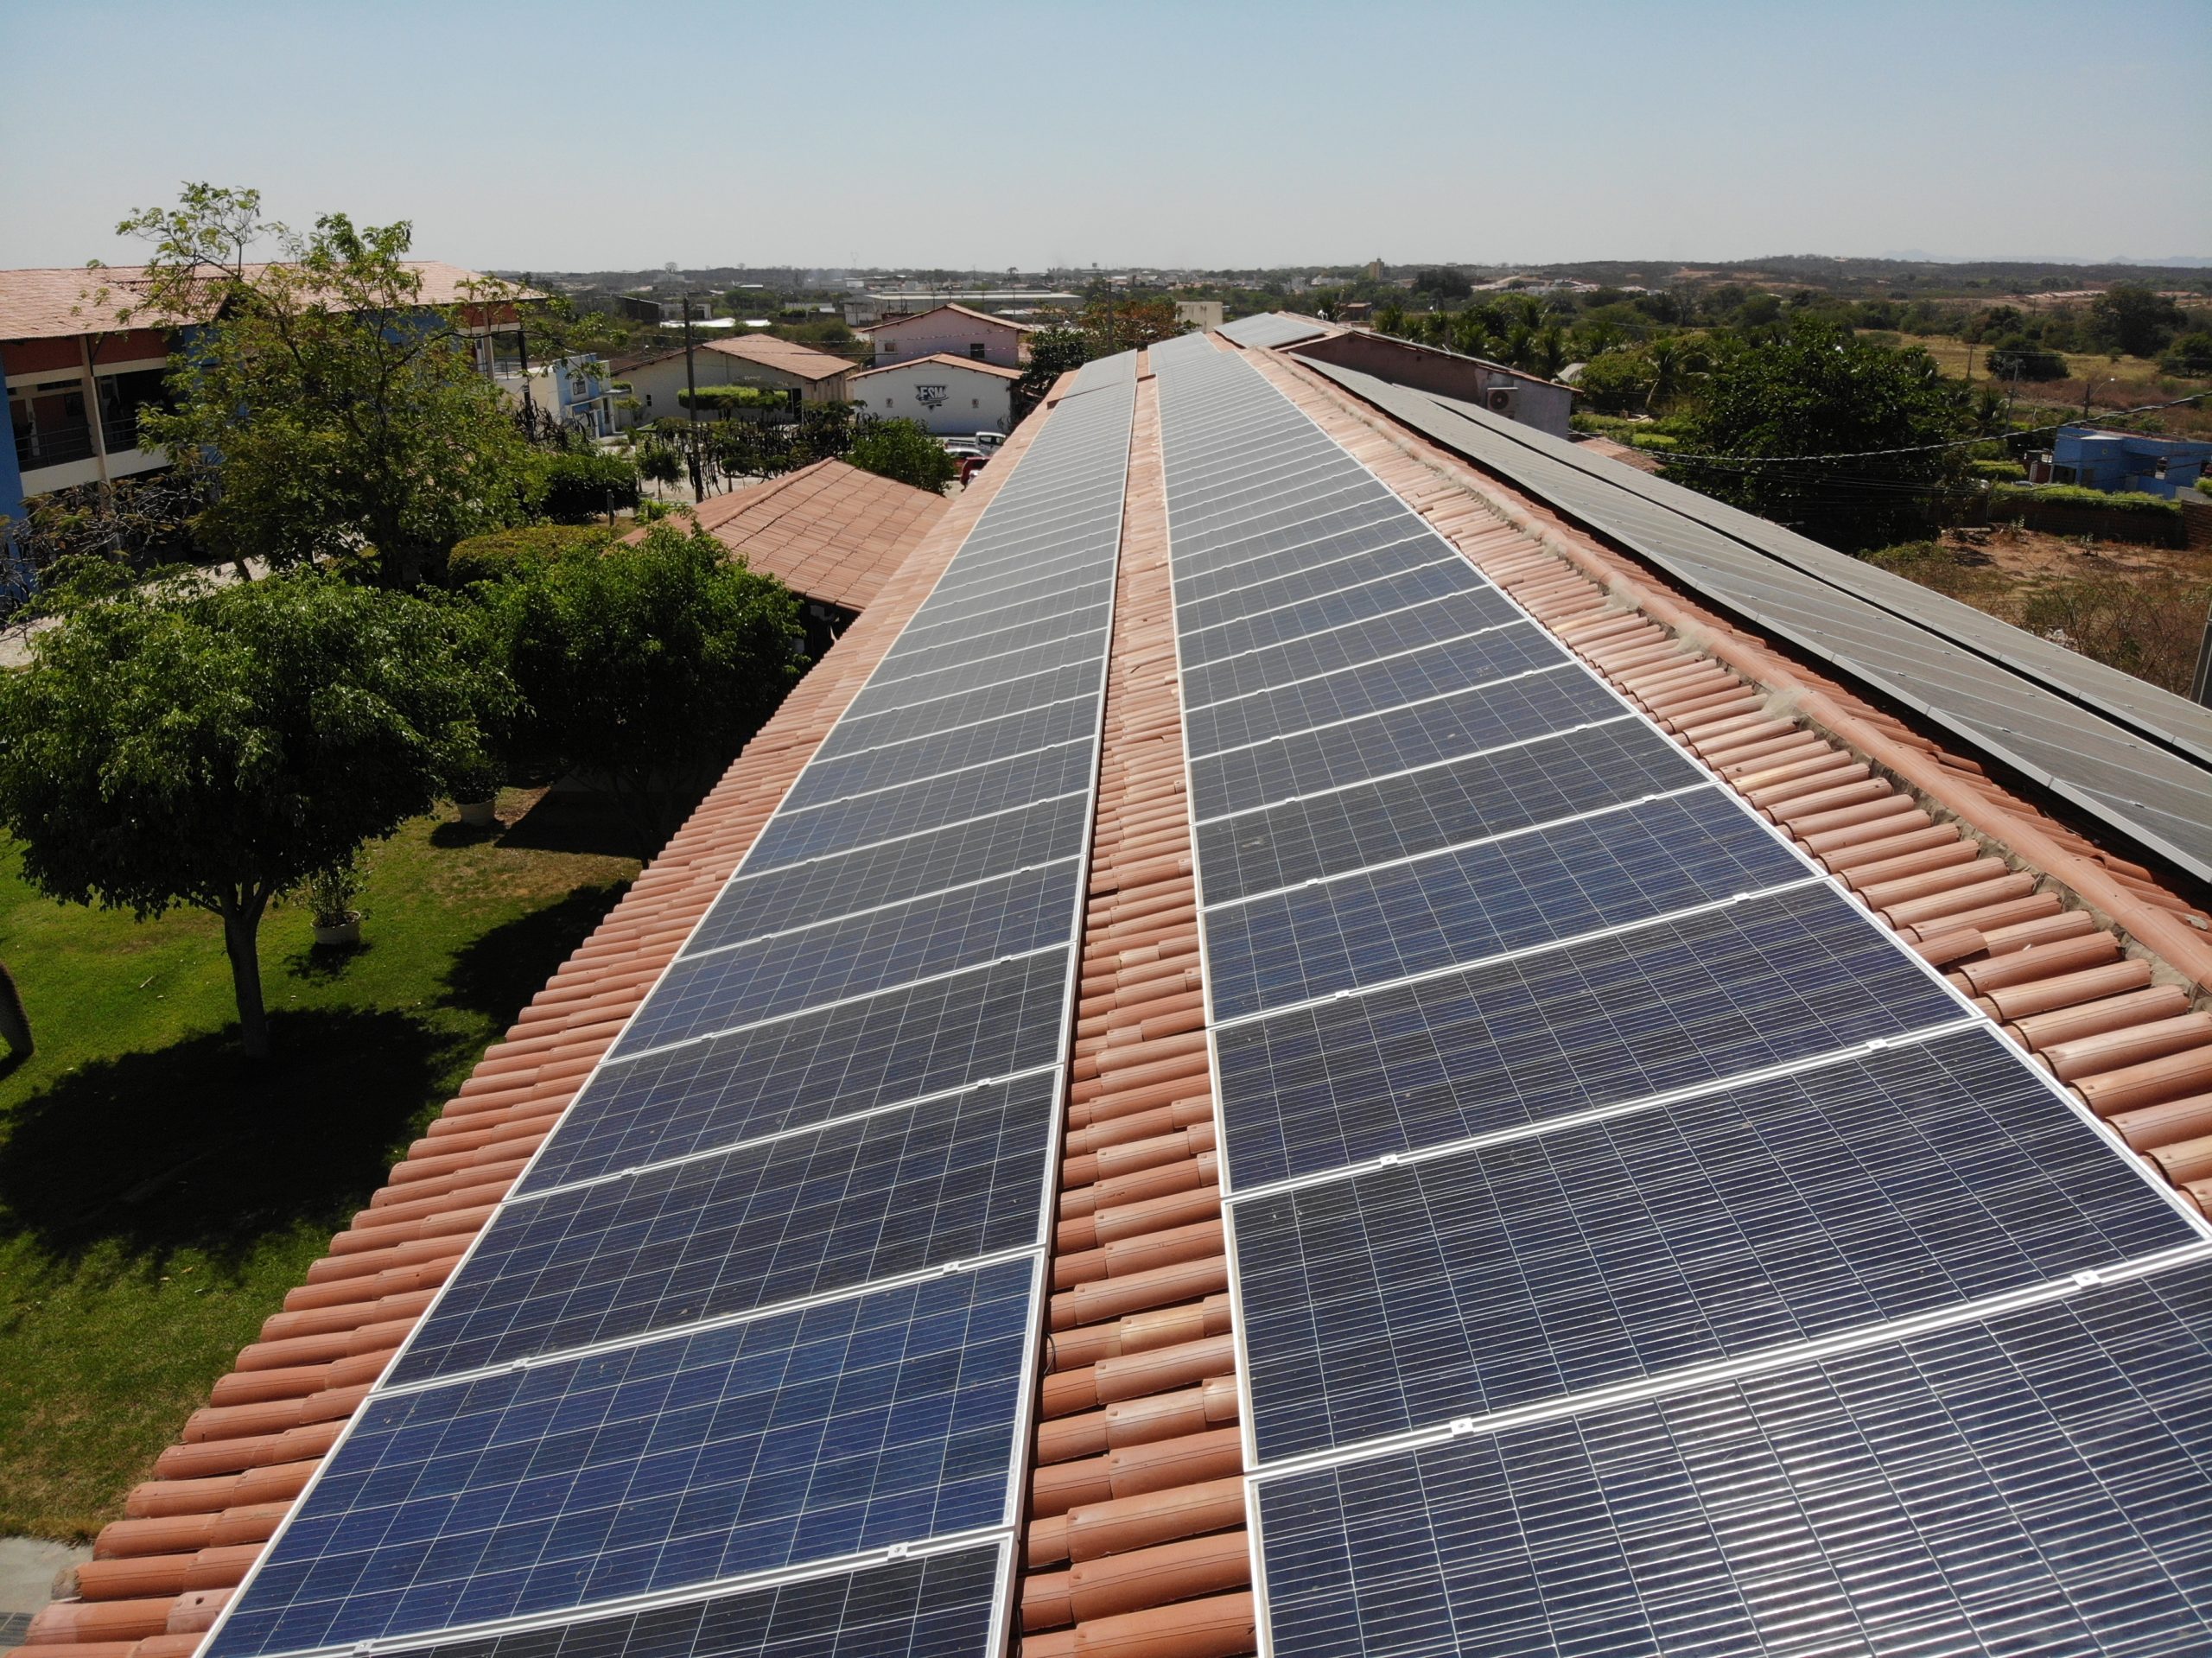 Painéis solares em telhado. Foto: Acervo Teccel.